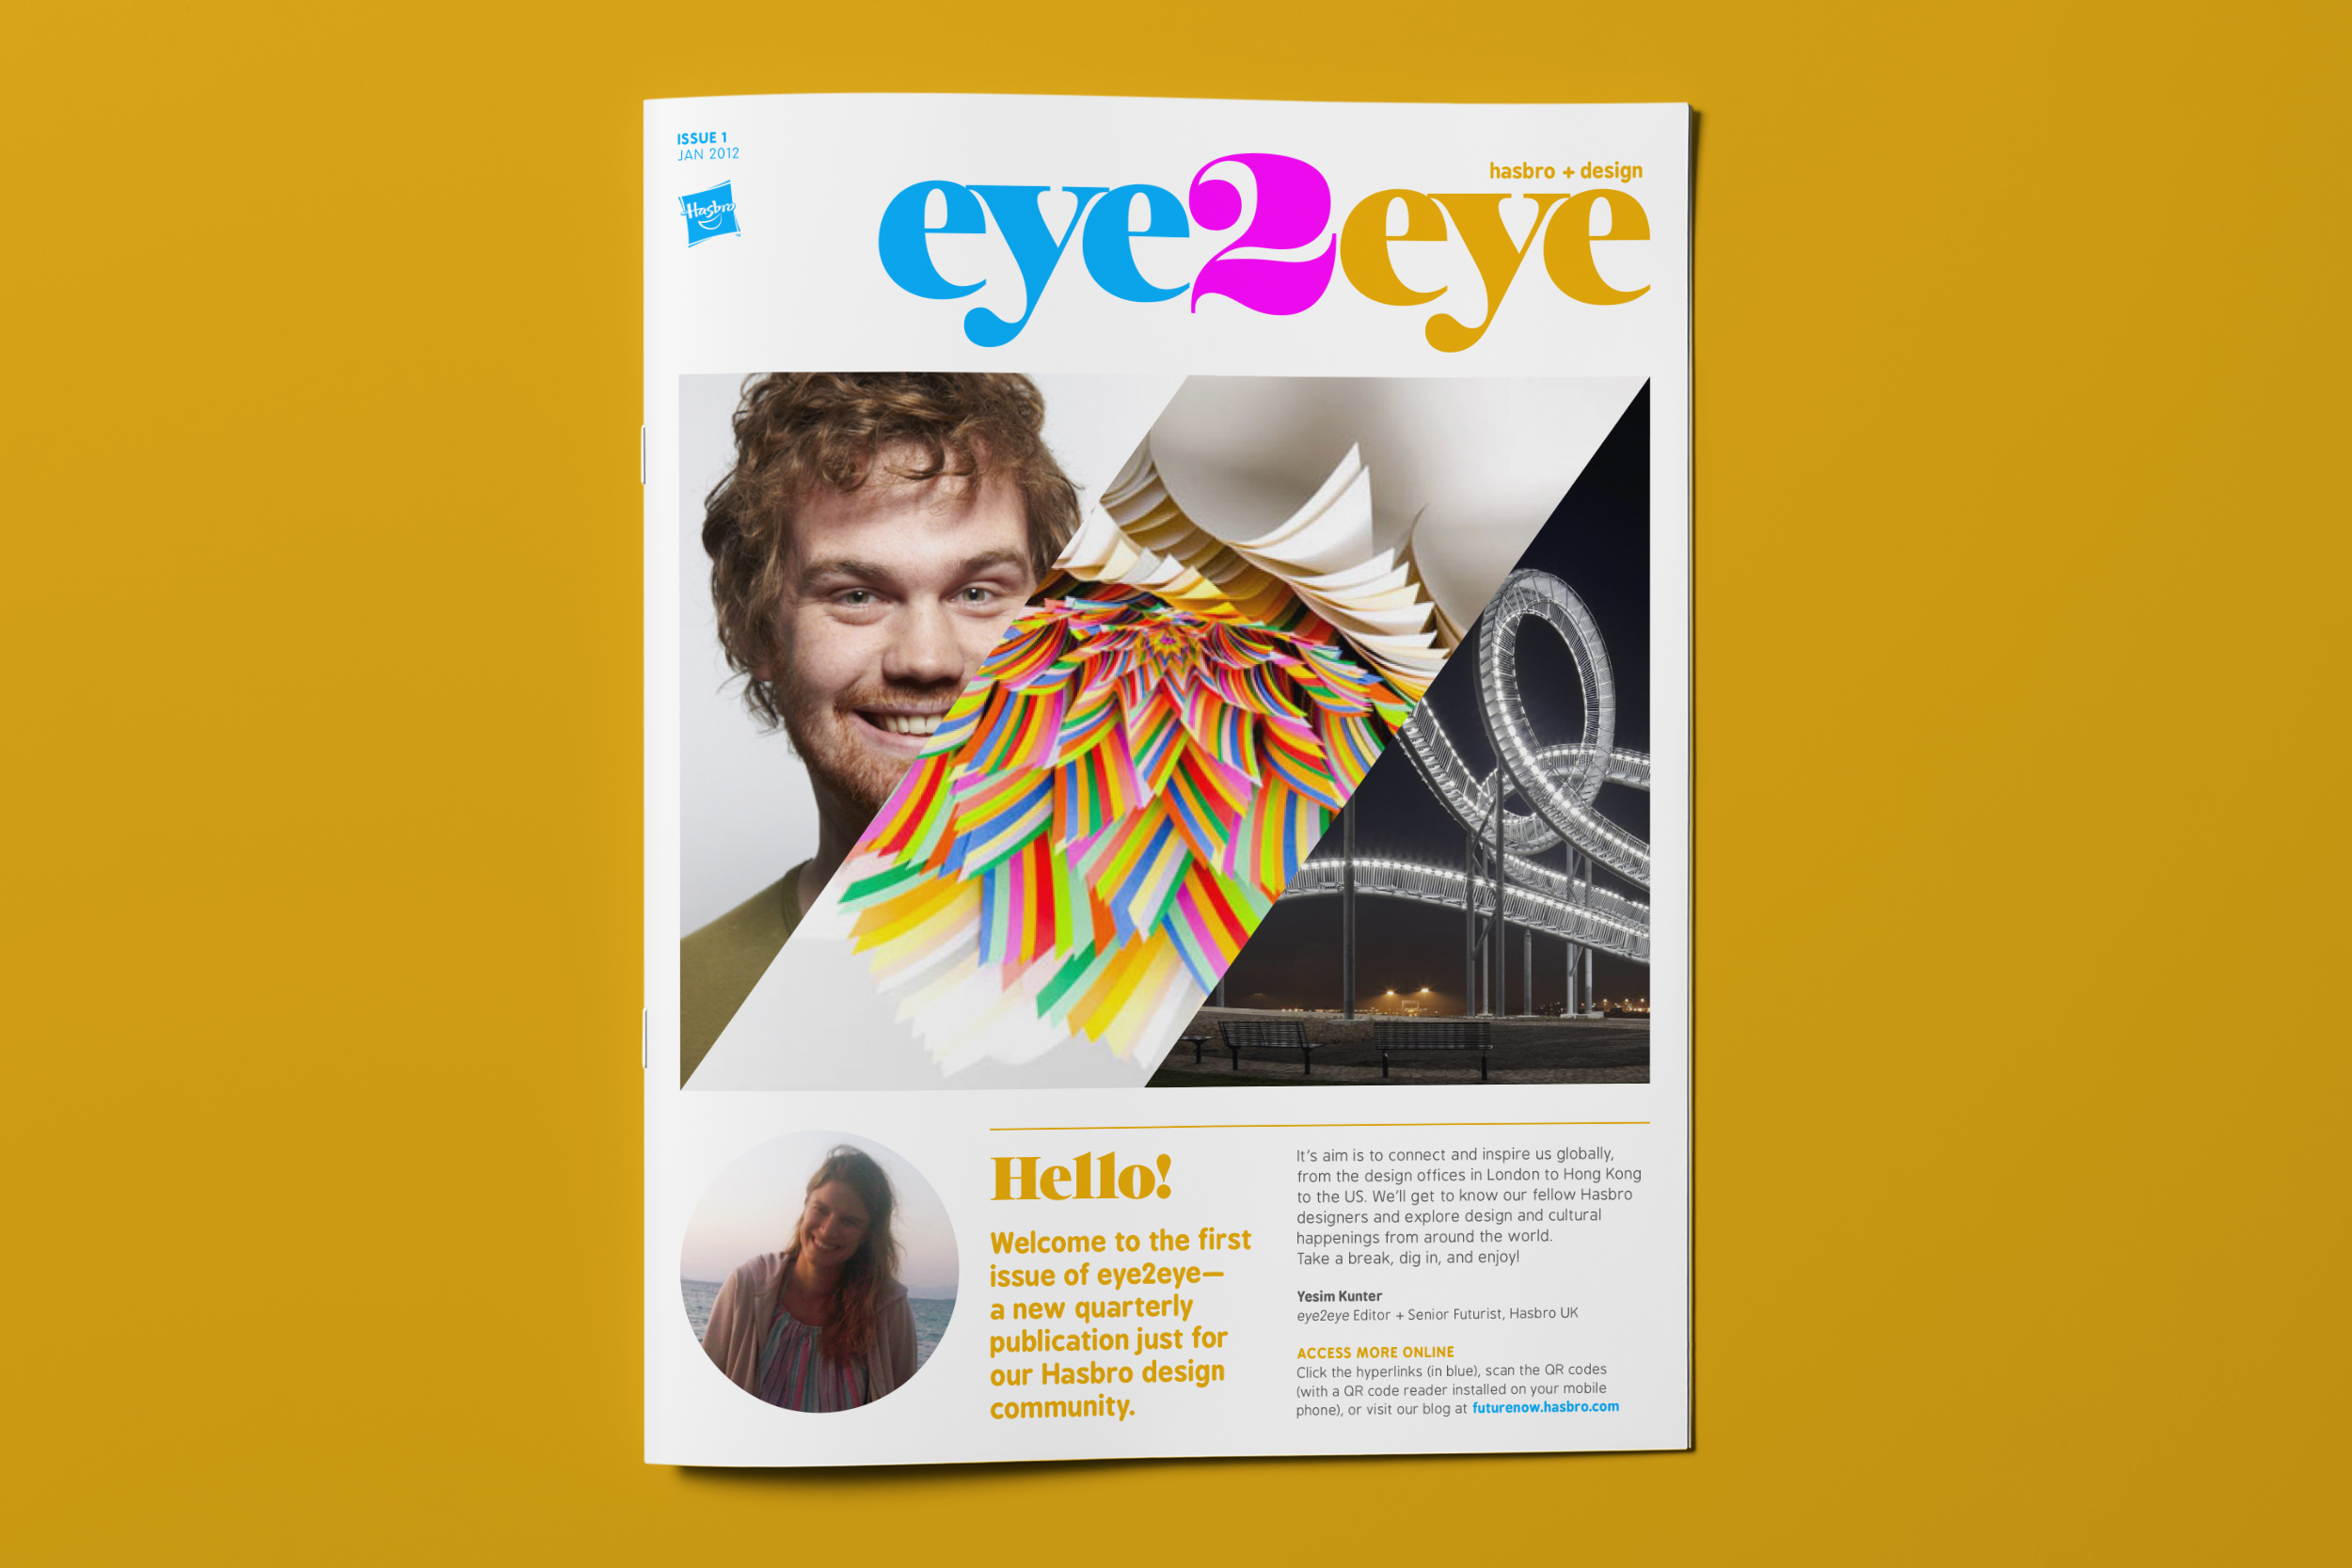 hasbro-eye2eye-newsletter-cover.png